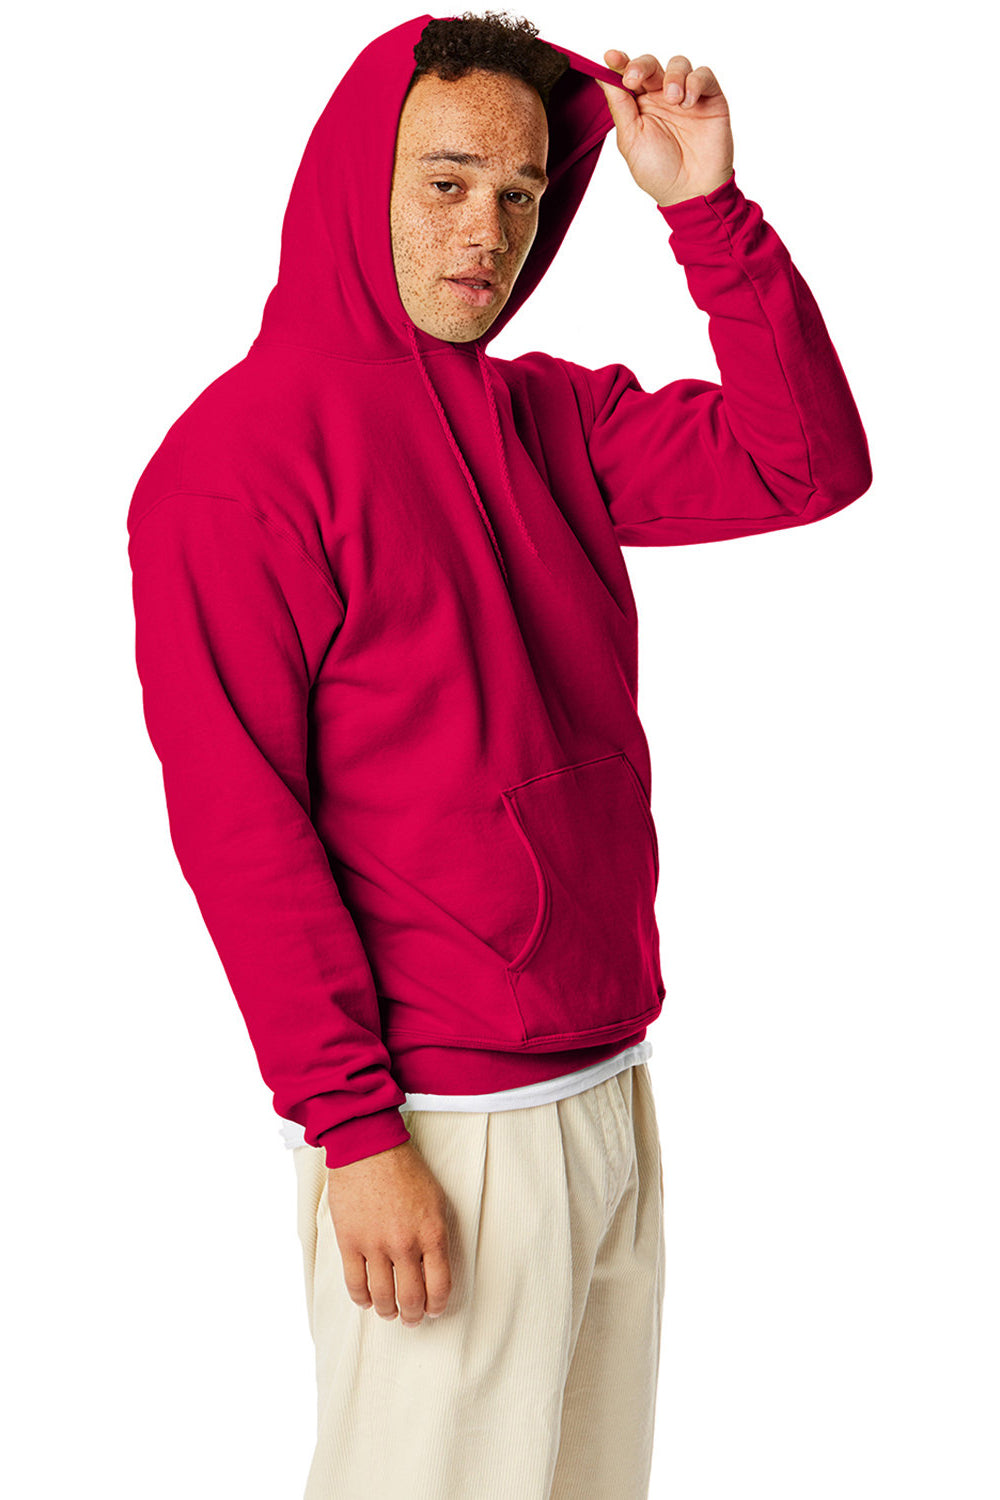 Hanes P170 Mens EcoSmart Print Pro XP Hooded Sweatshirt Hoodie Athletic Crimson Red SIde